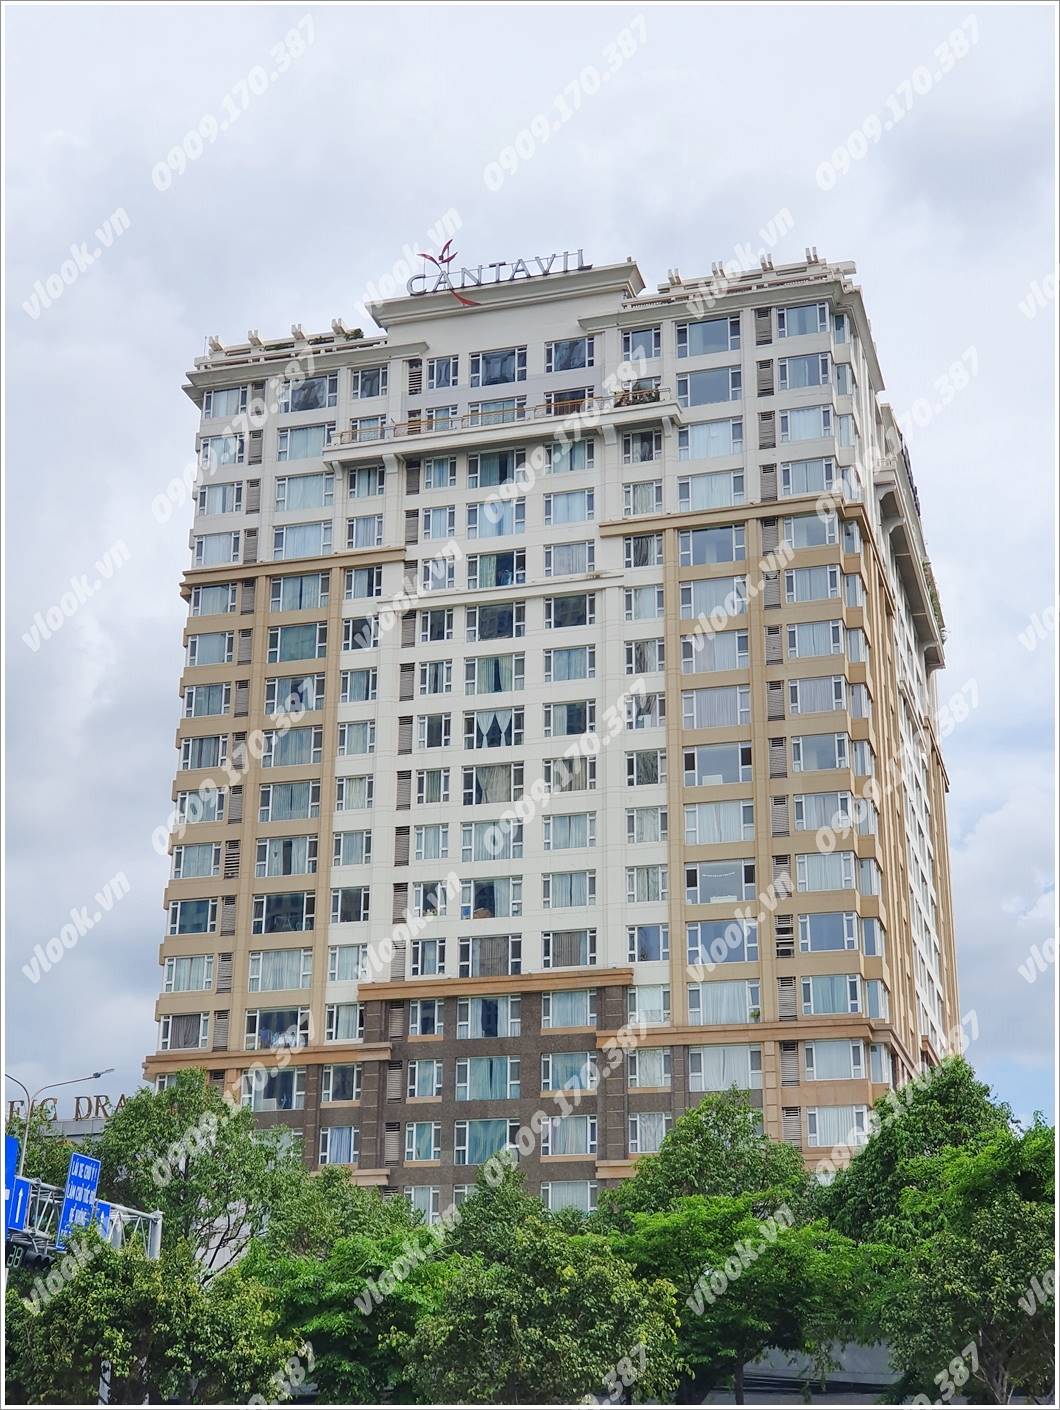 Cao ốc văn phòng cho thuê Cantavil Hoàn Cầu, Điện Biên Phủ, Quận Bình Thạnh TP.HCM - vlook.vn